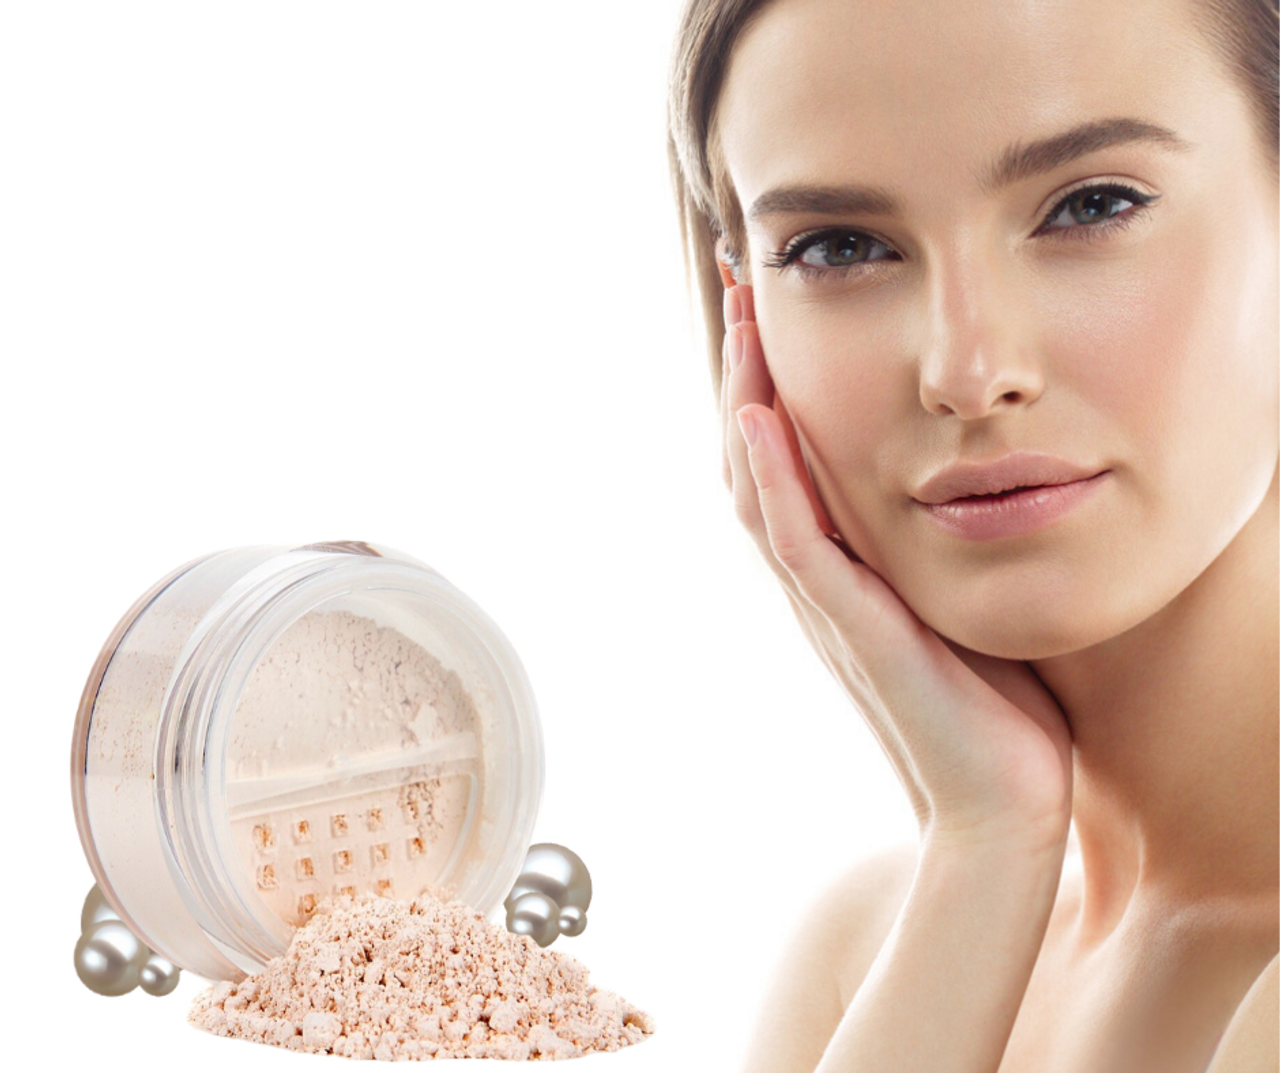 True Skin Nutrition Age Defying Healing Pearl Powder